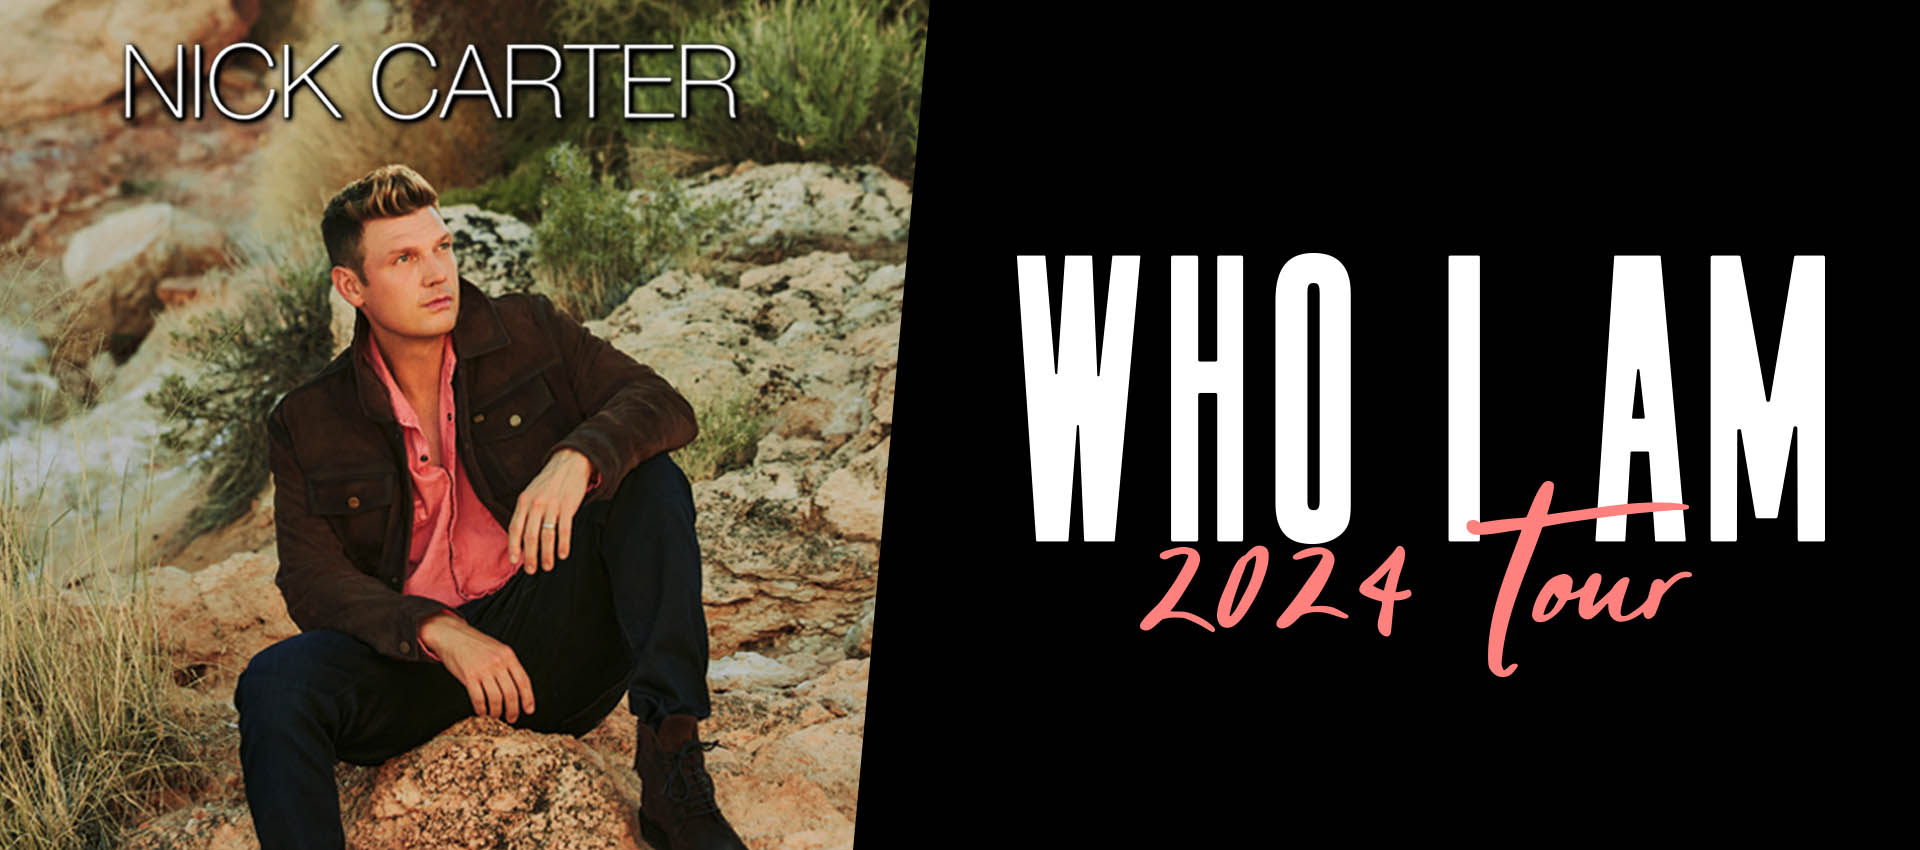 Nick Carter aplaza parte de su gira “Who i Am” Bogotá lo recibirá el 12 de marzo